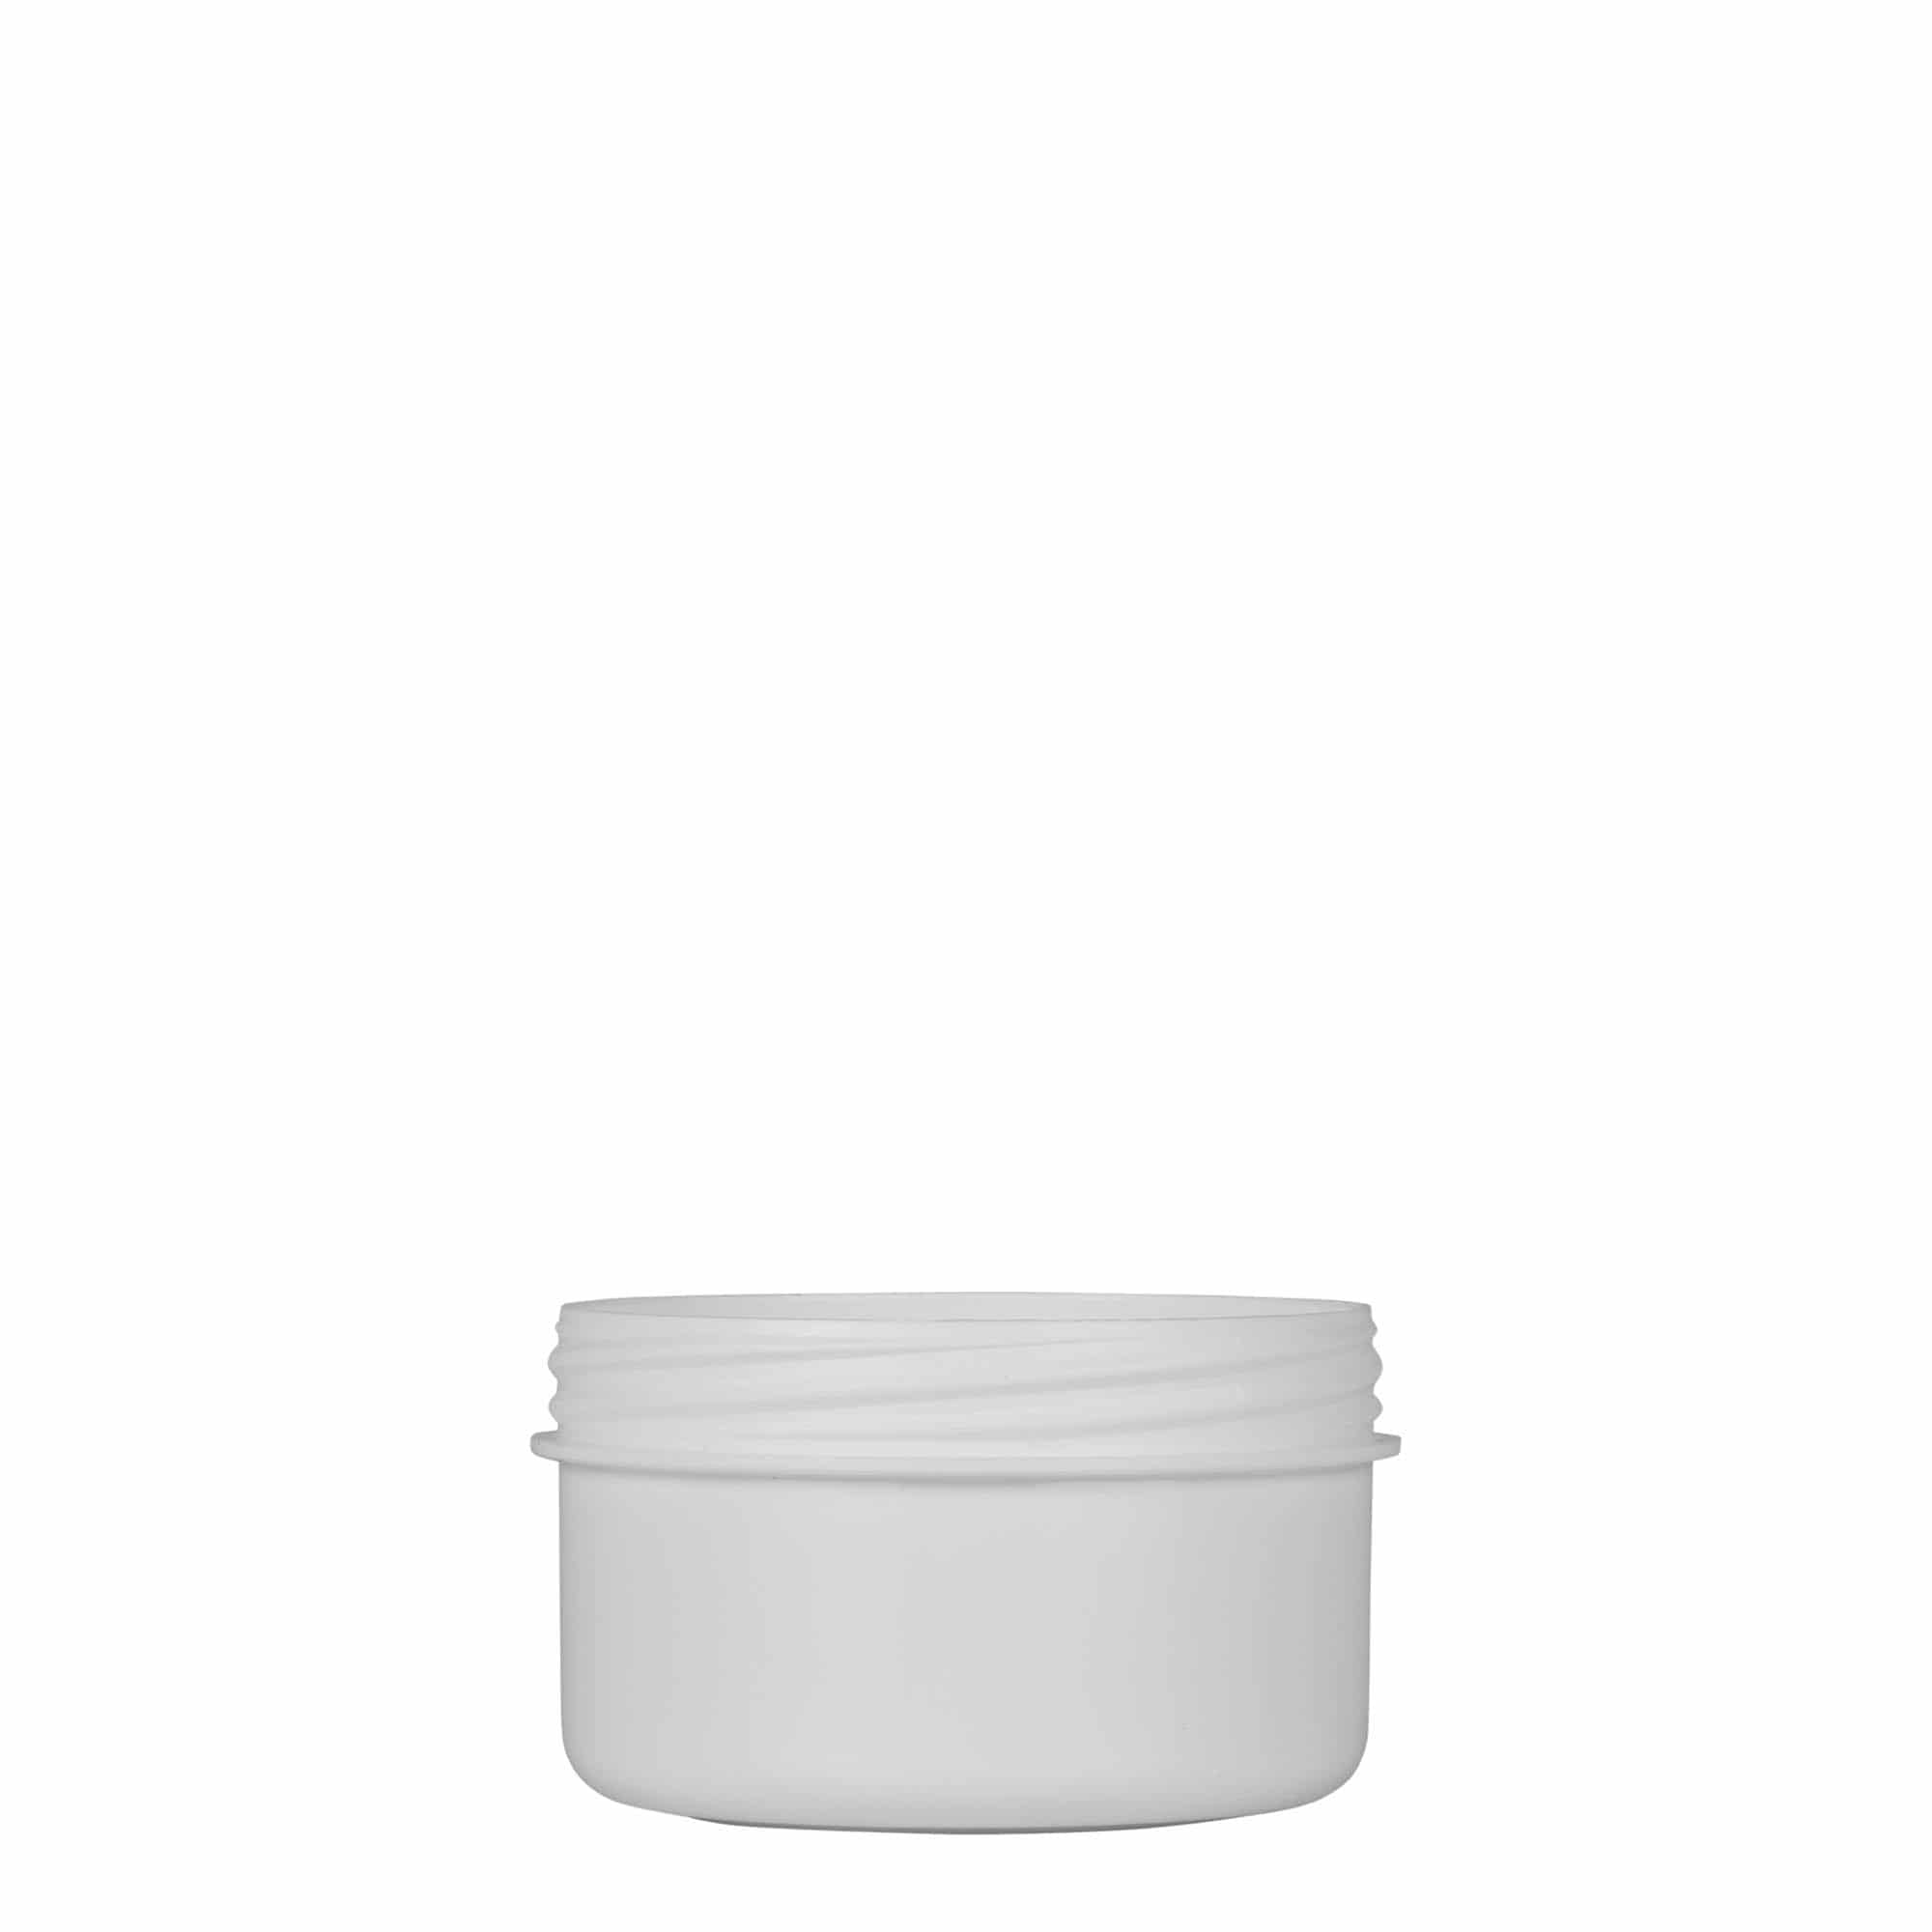 60 ml plastic jar 'White Line', PP, white, closure: screw cap